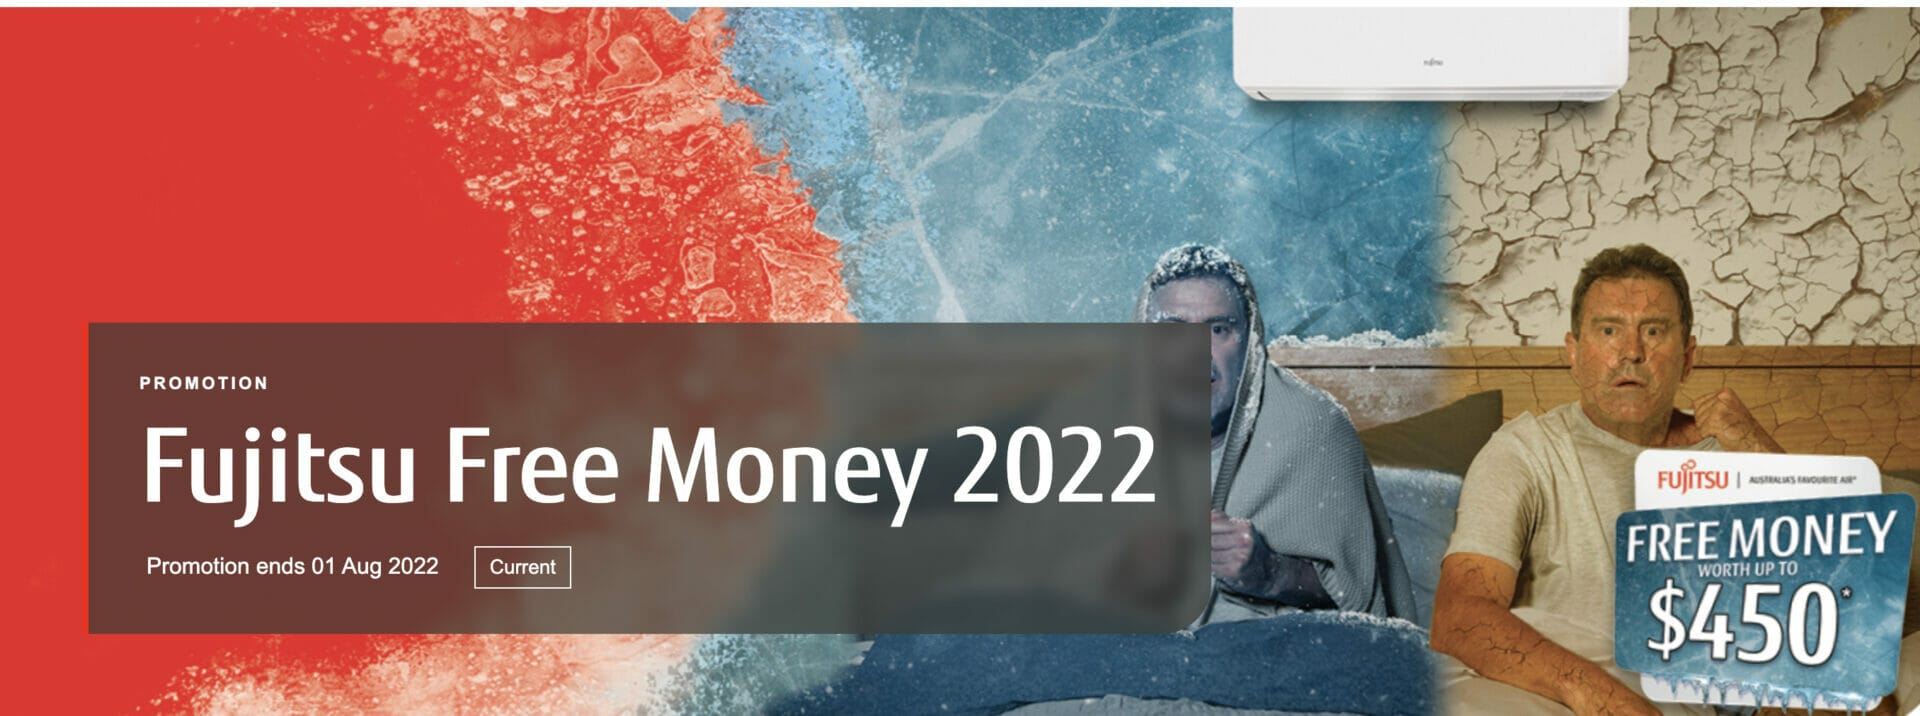 Fujitsu Free Money 2022